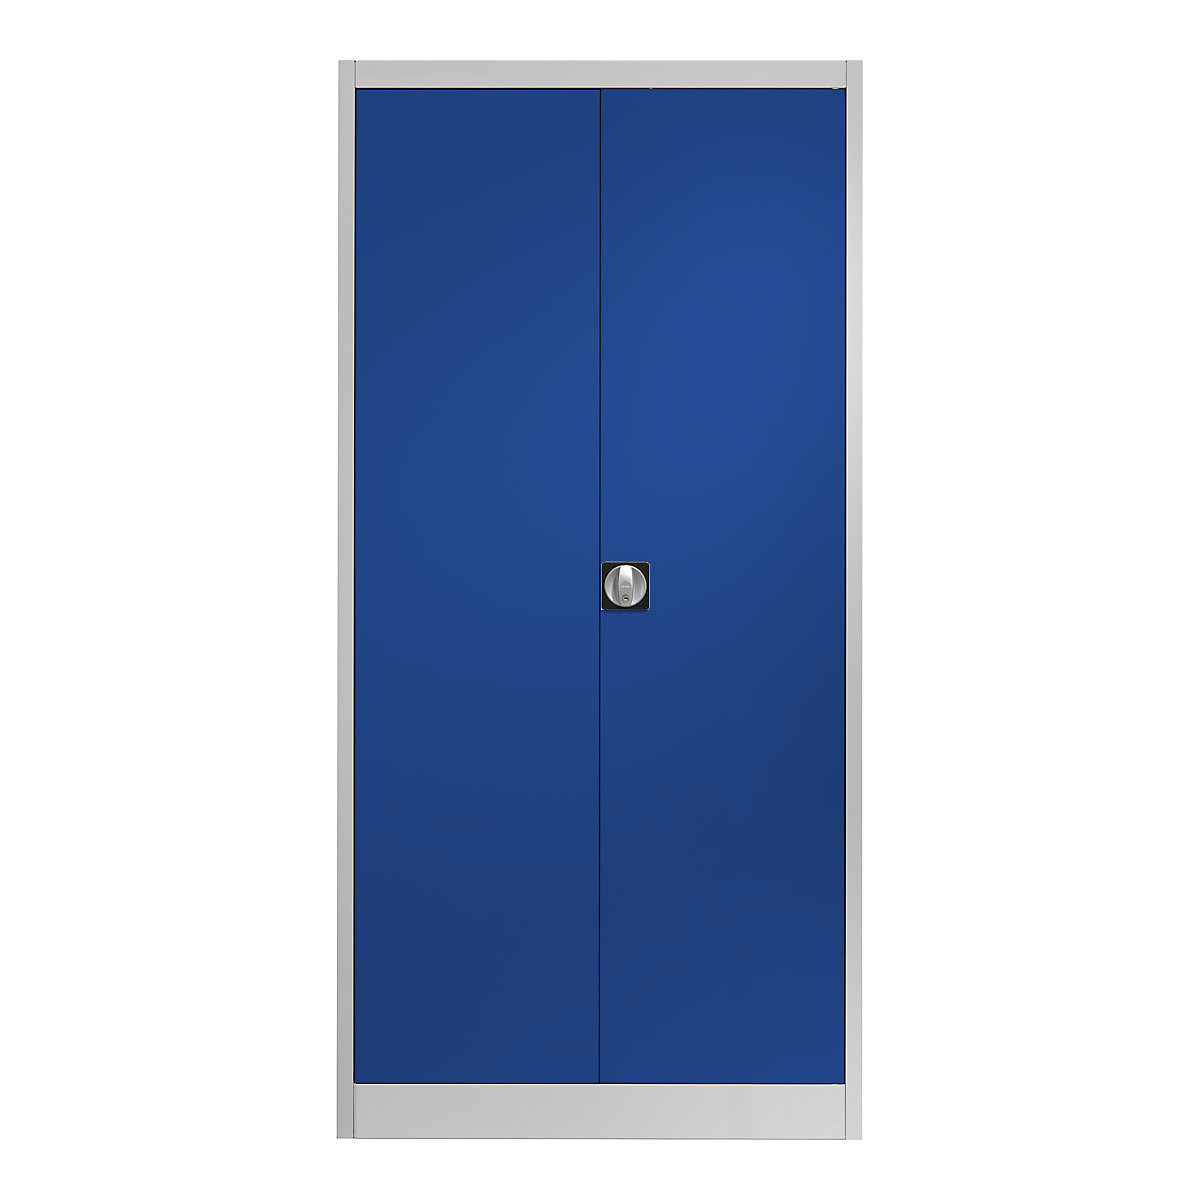 Čelični ormar s krilnim vratima – mauser, 4 police, D 500 mm, u svijetlosivoj / ultramarin boji-6